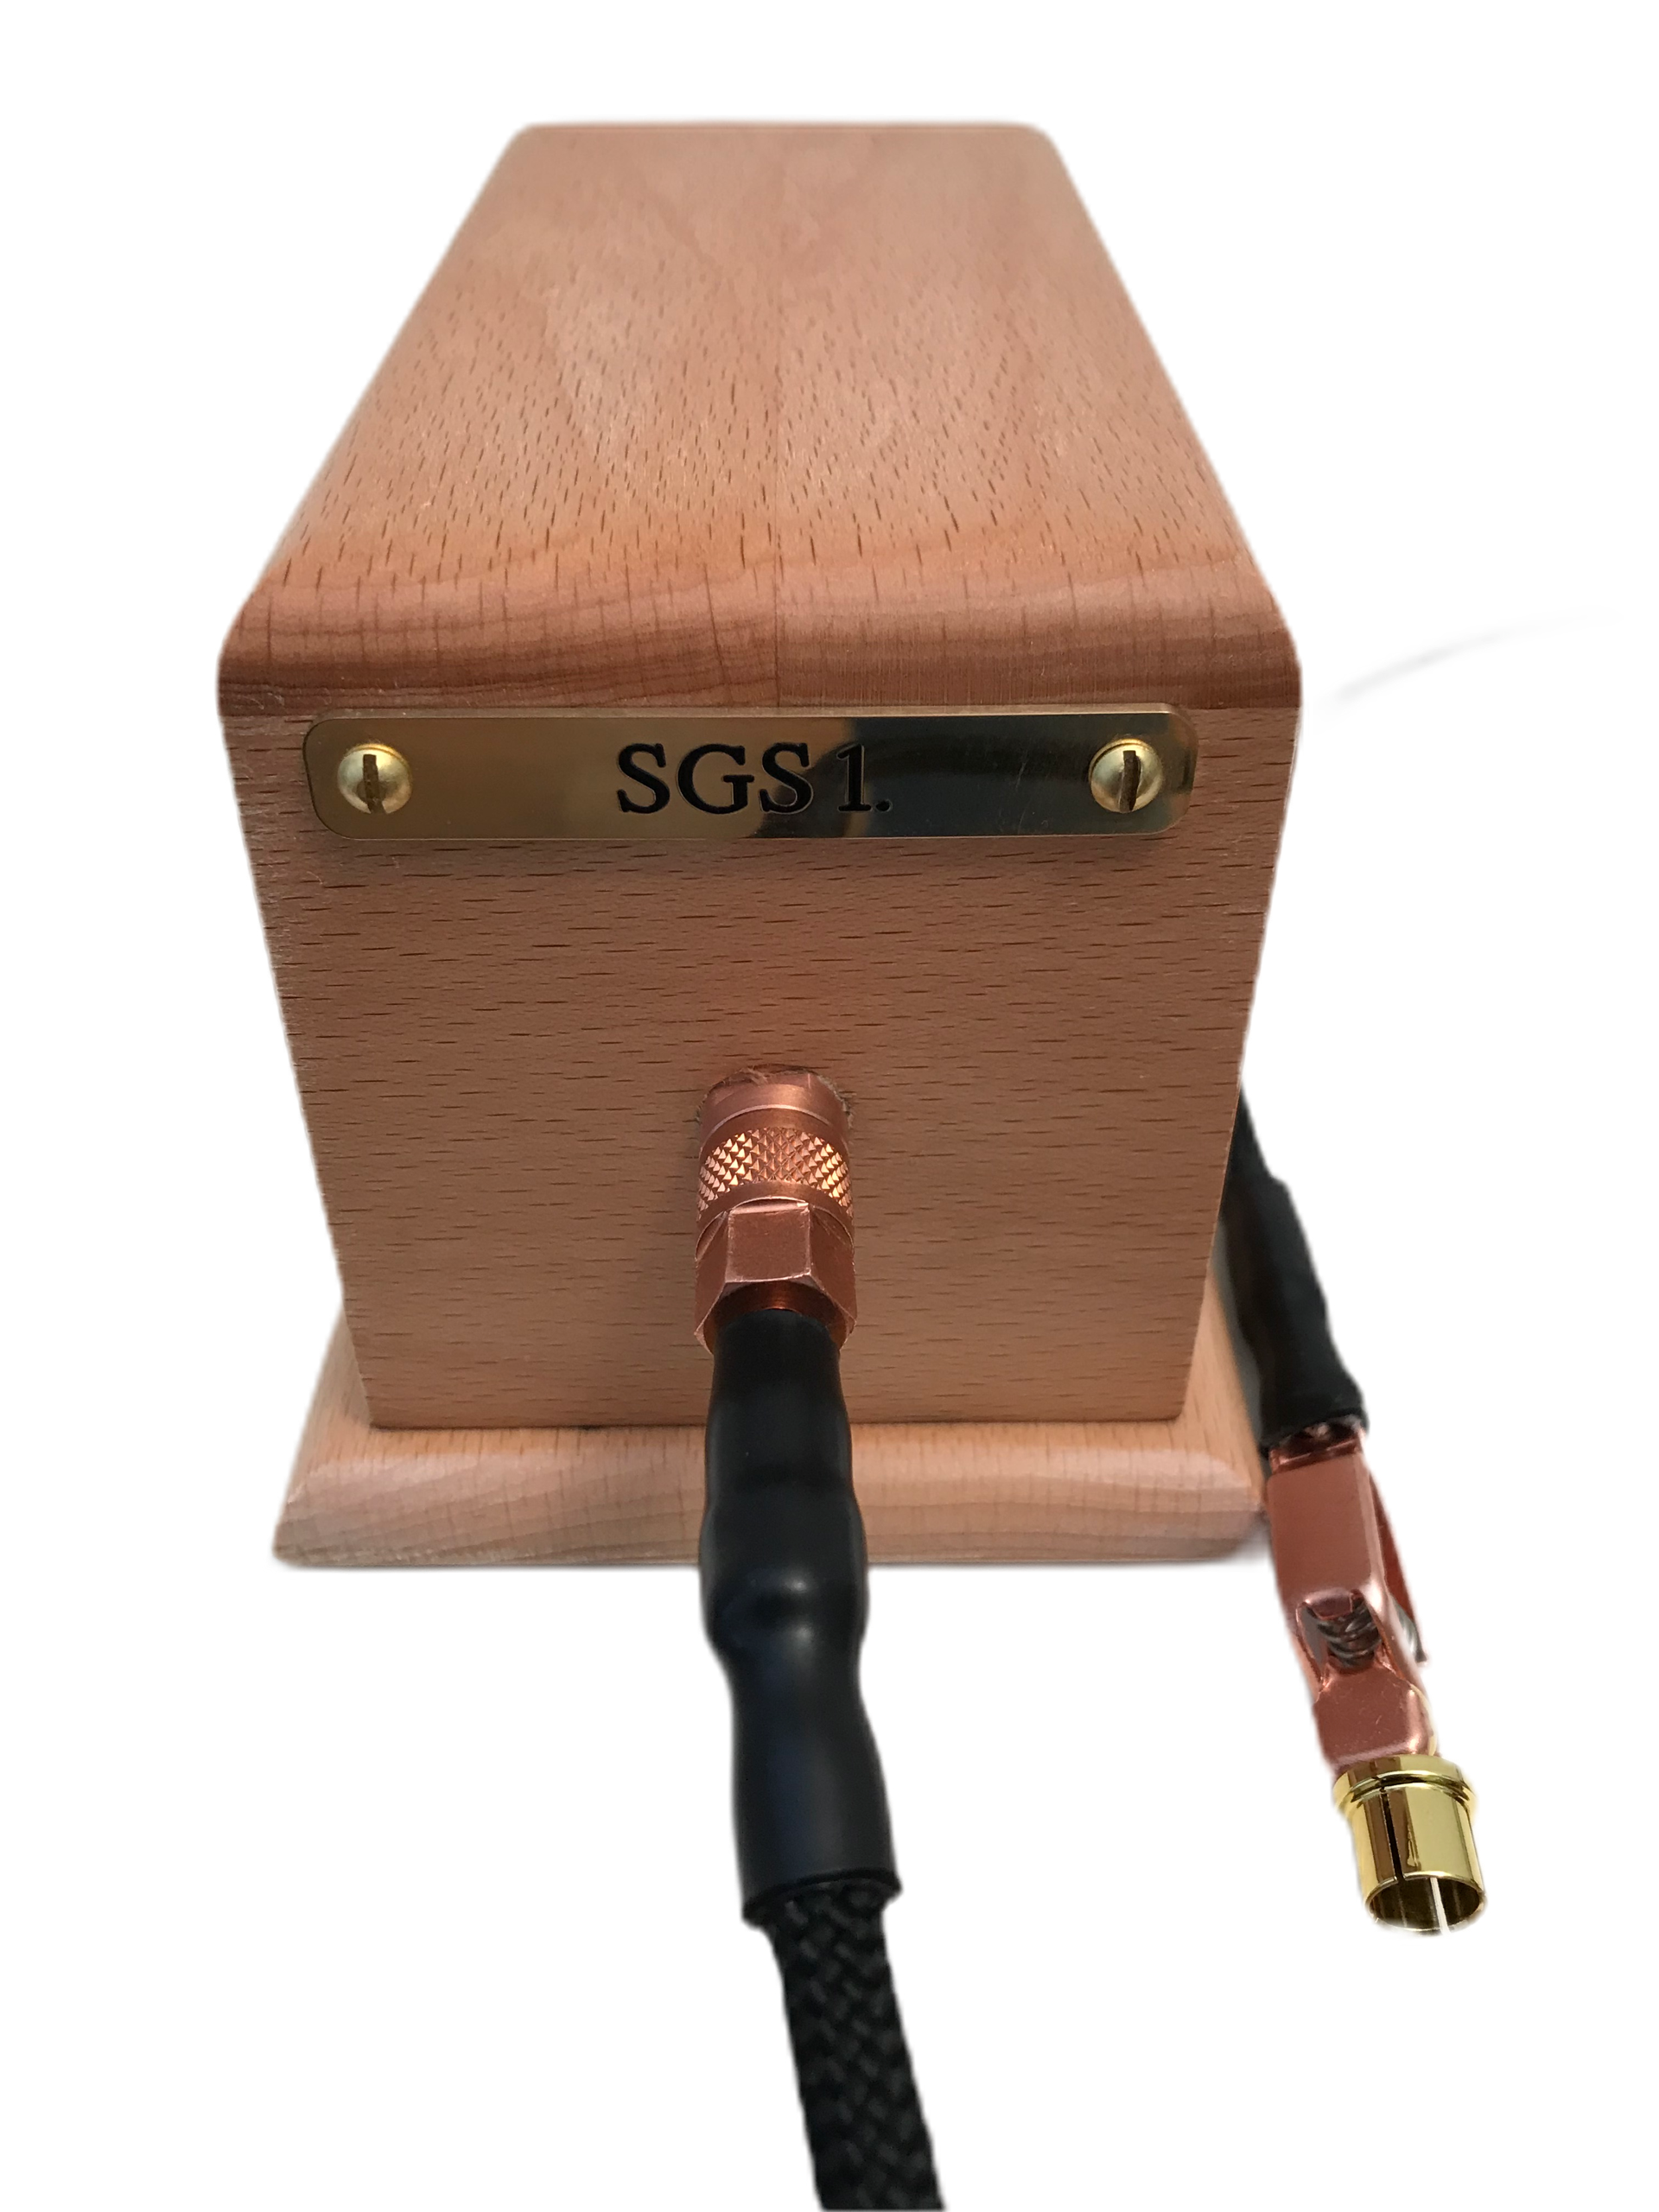 SGS 1 grounding box.